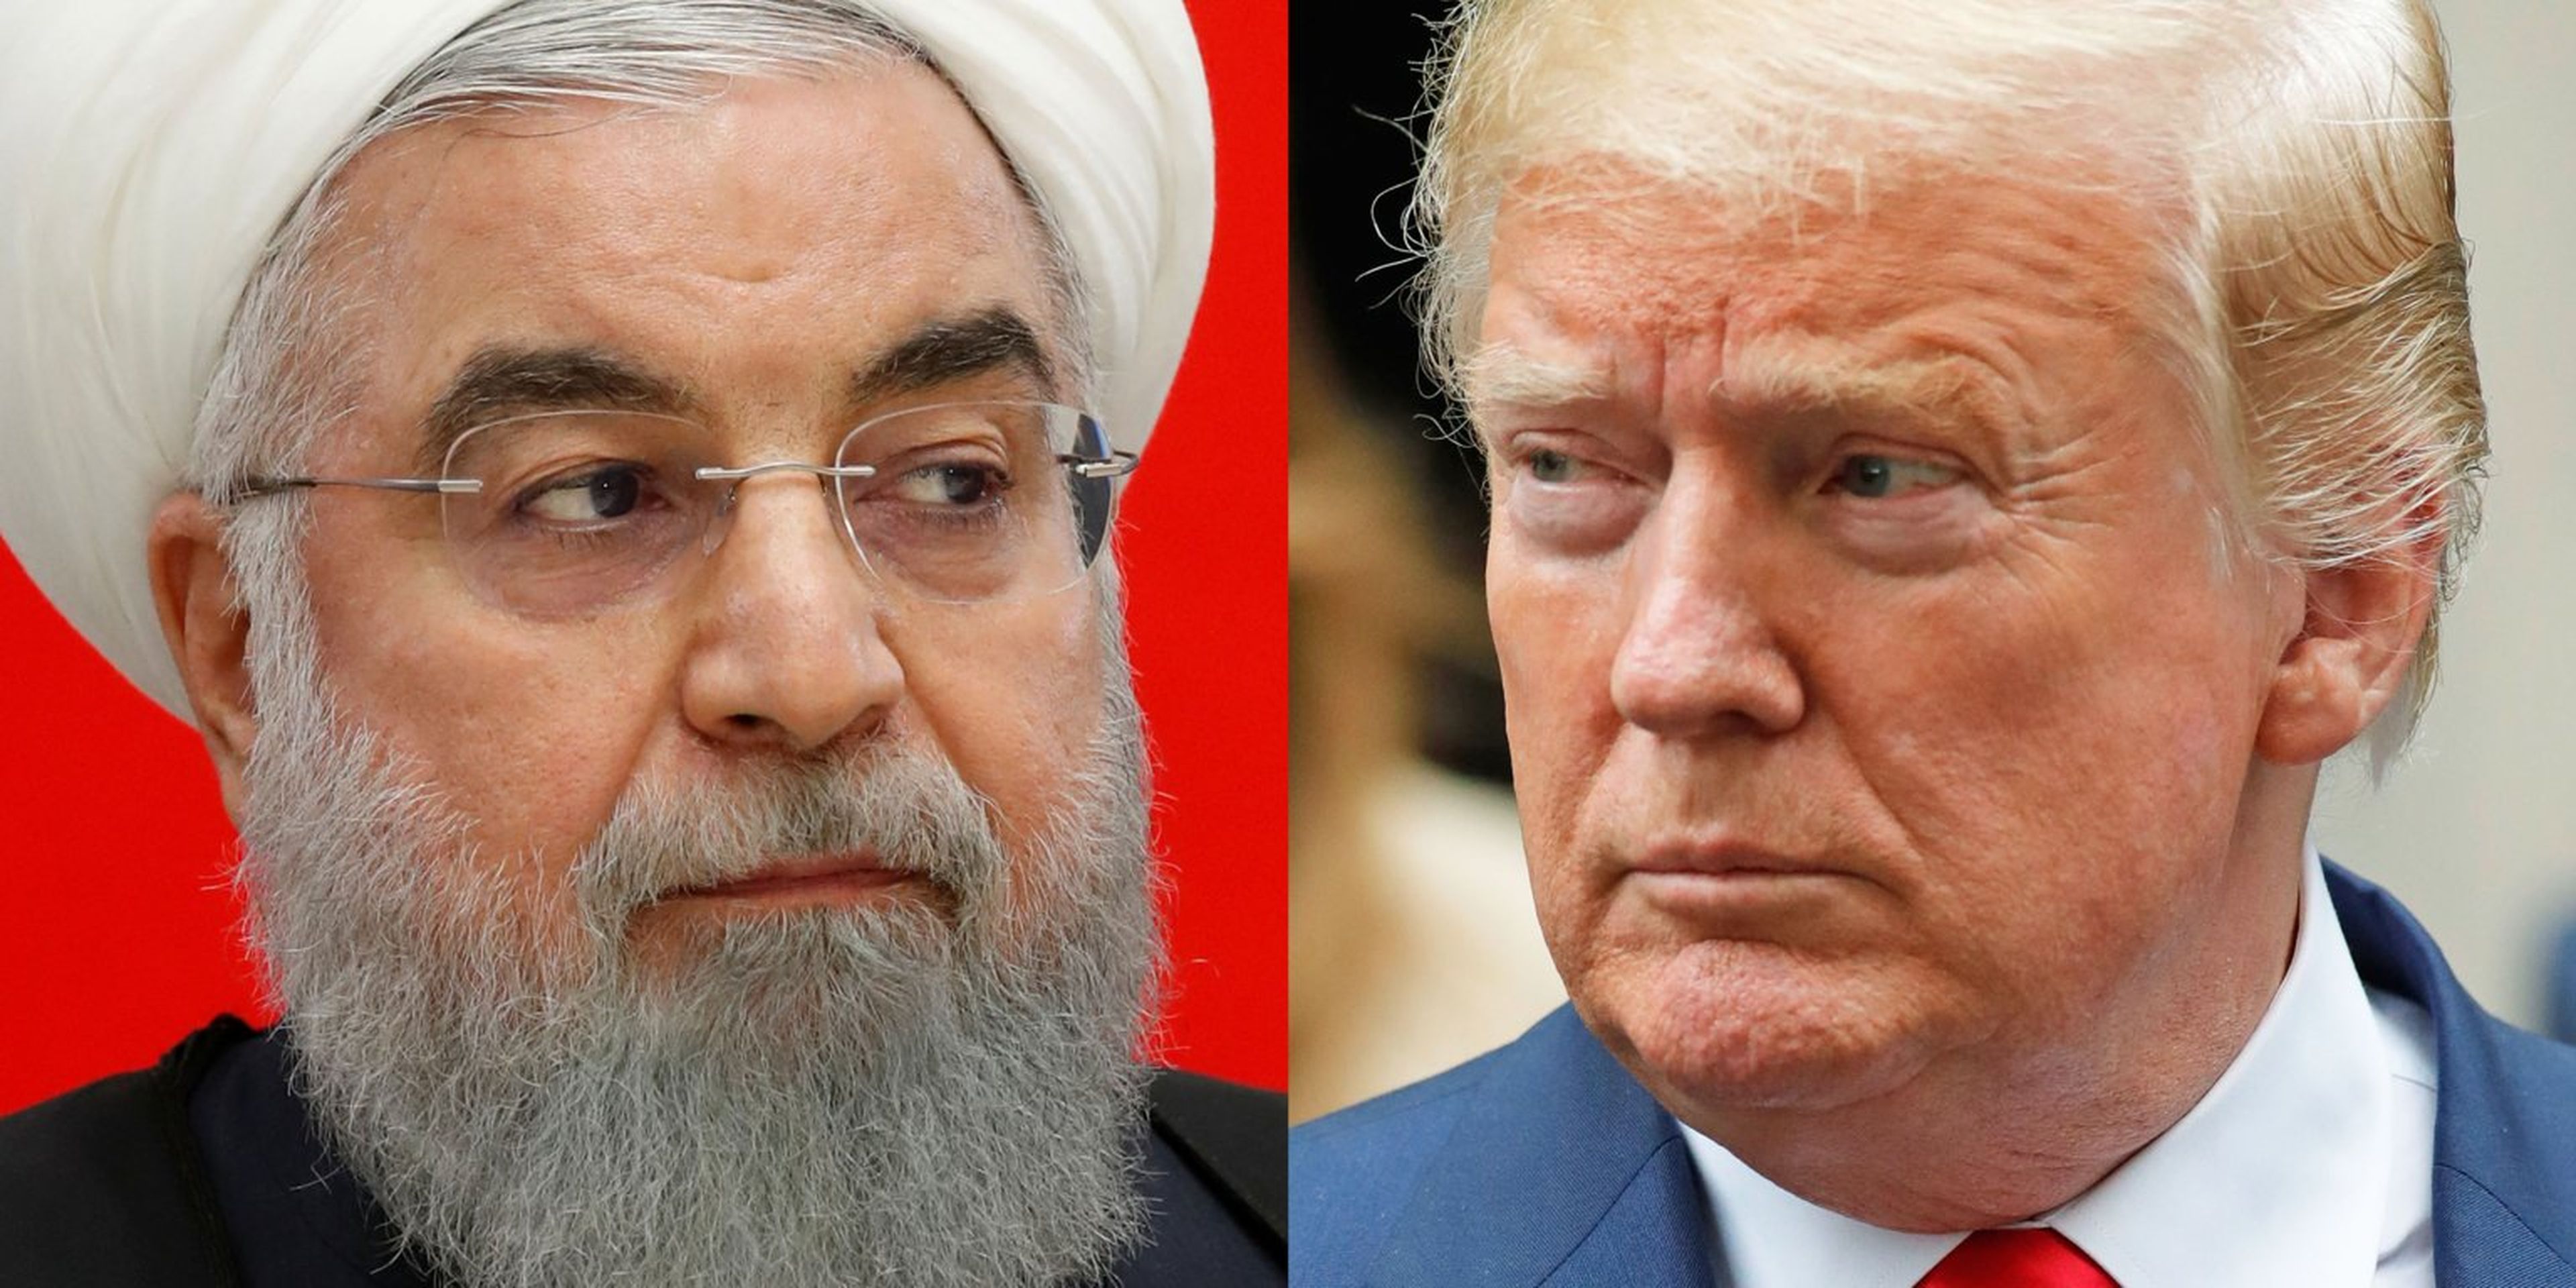 El presidente iraní Hasán Rohaní y el presidente estadounidense Donald Trump